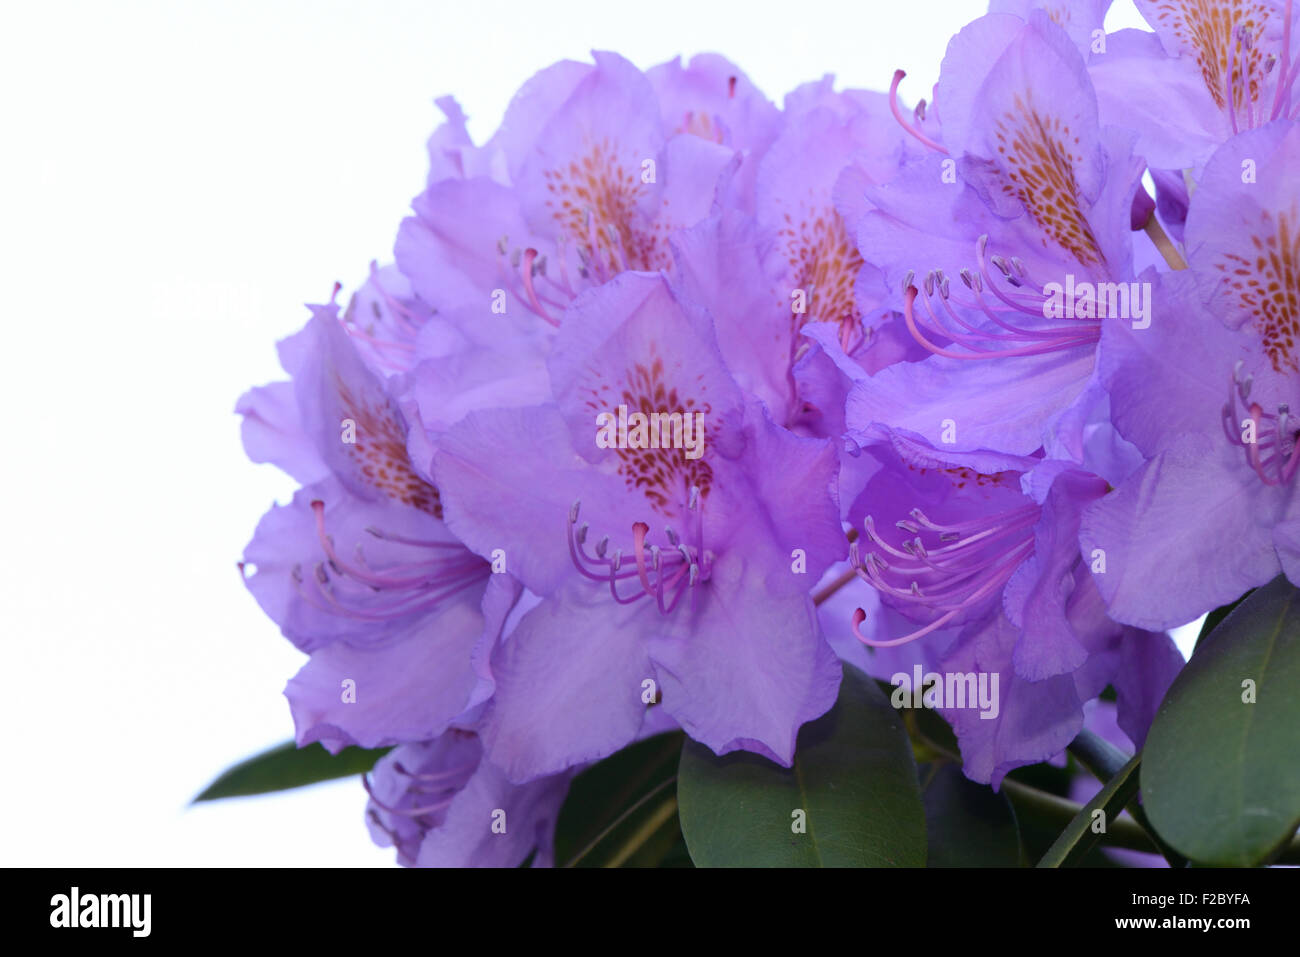 Rhododendron-Blumen, Blüten vor einem weißen Hintergrund Stockfoto